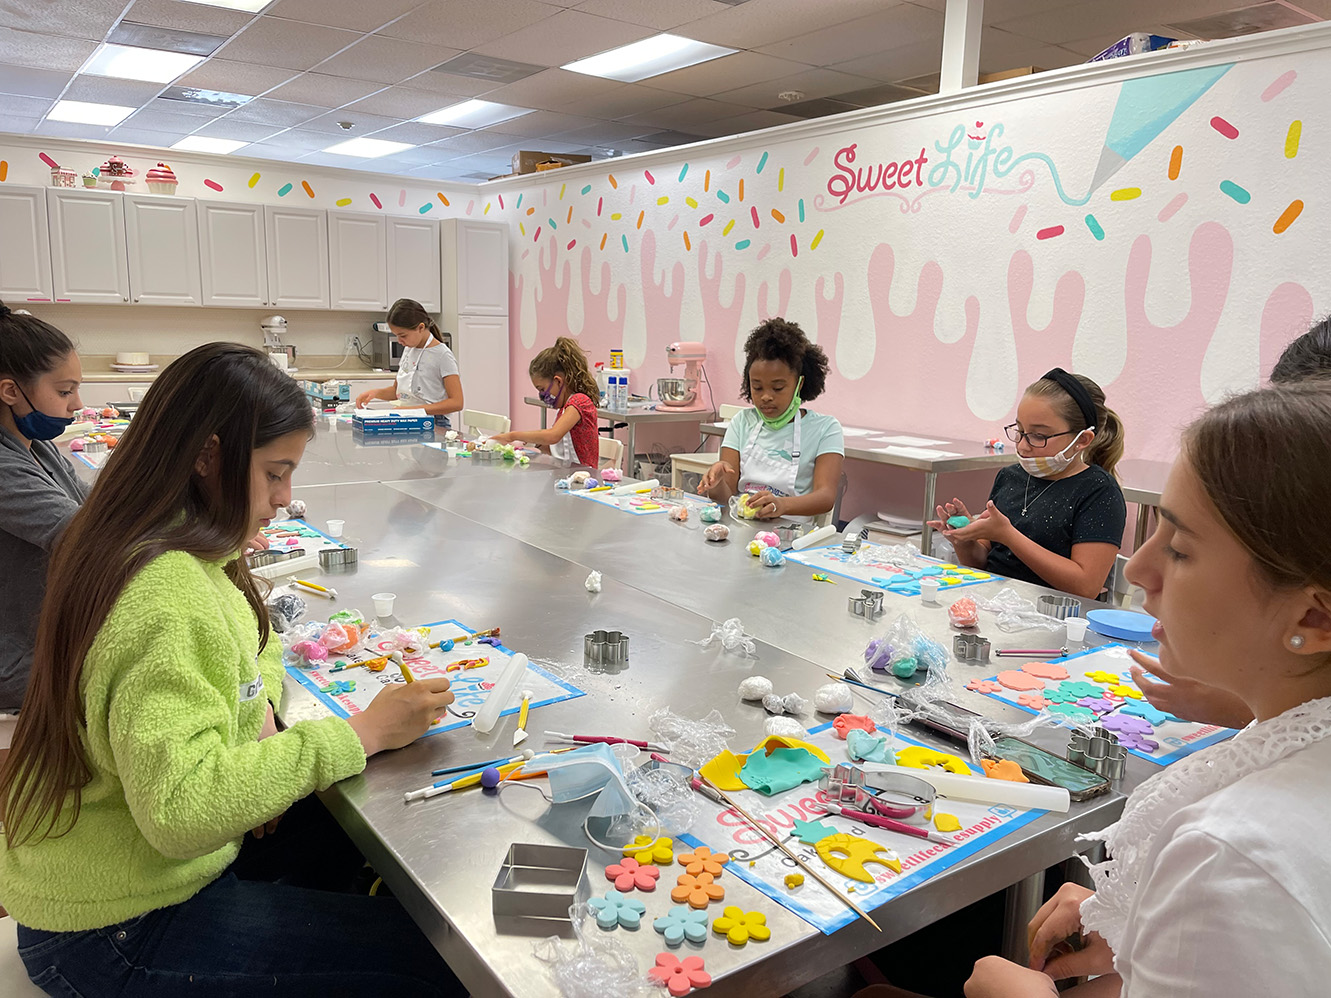 Children decorating and designing cakes